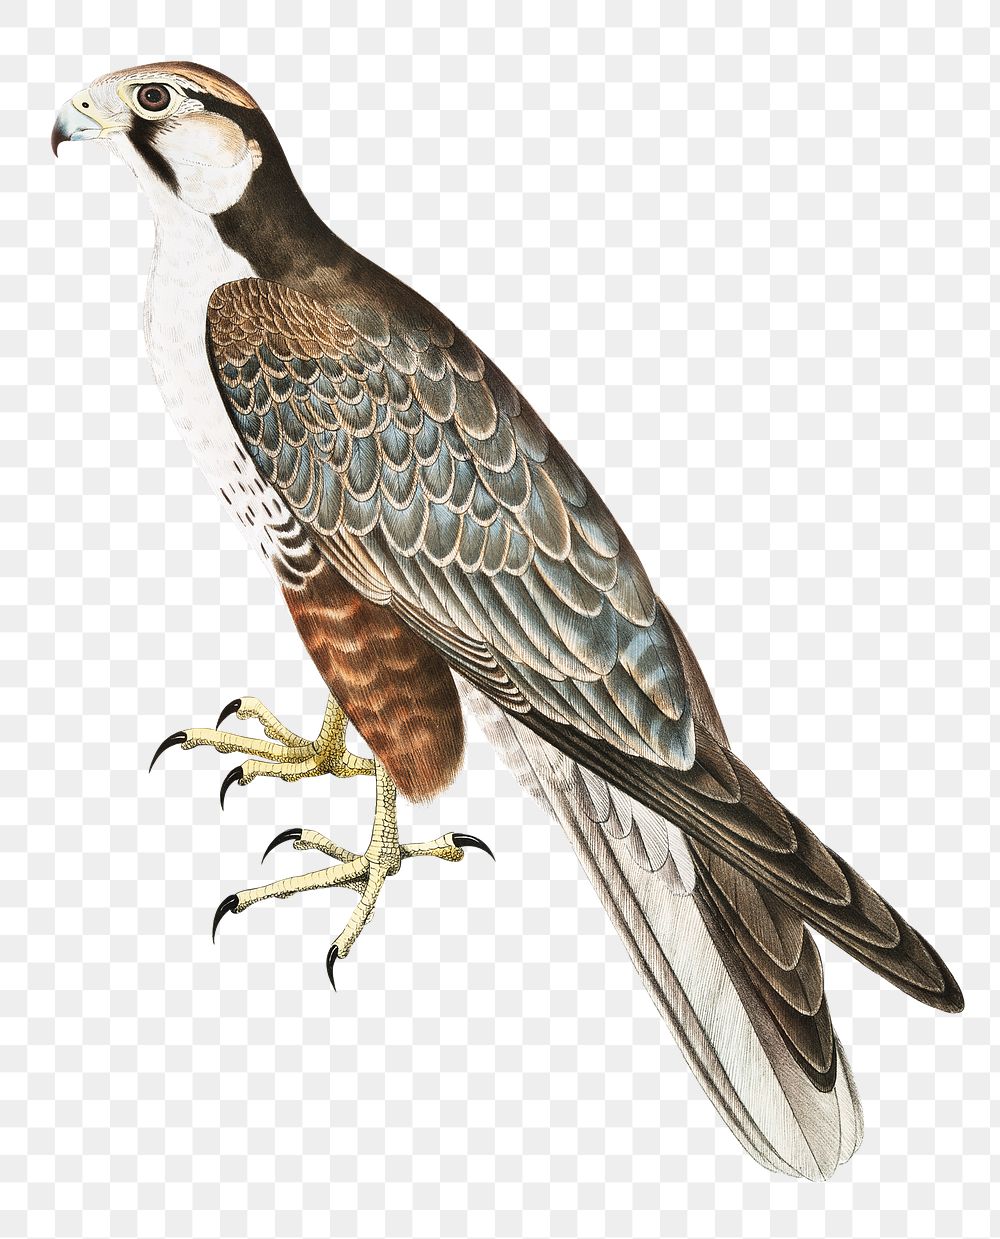 Jugger falcon png sticker, vintage bird on transparent background